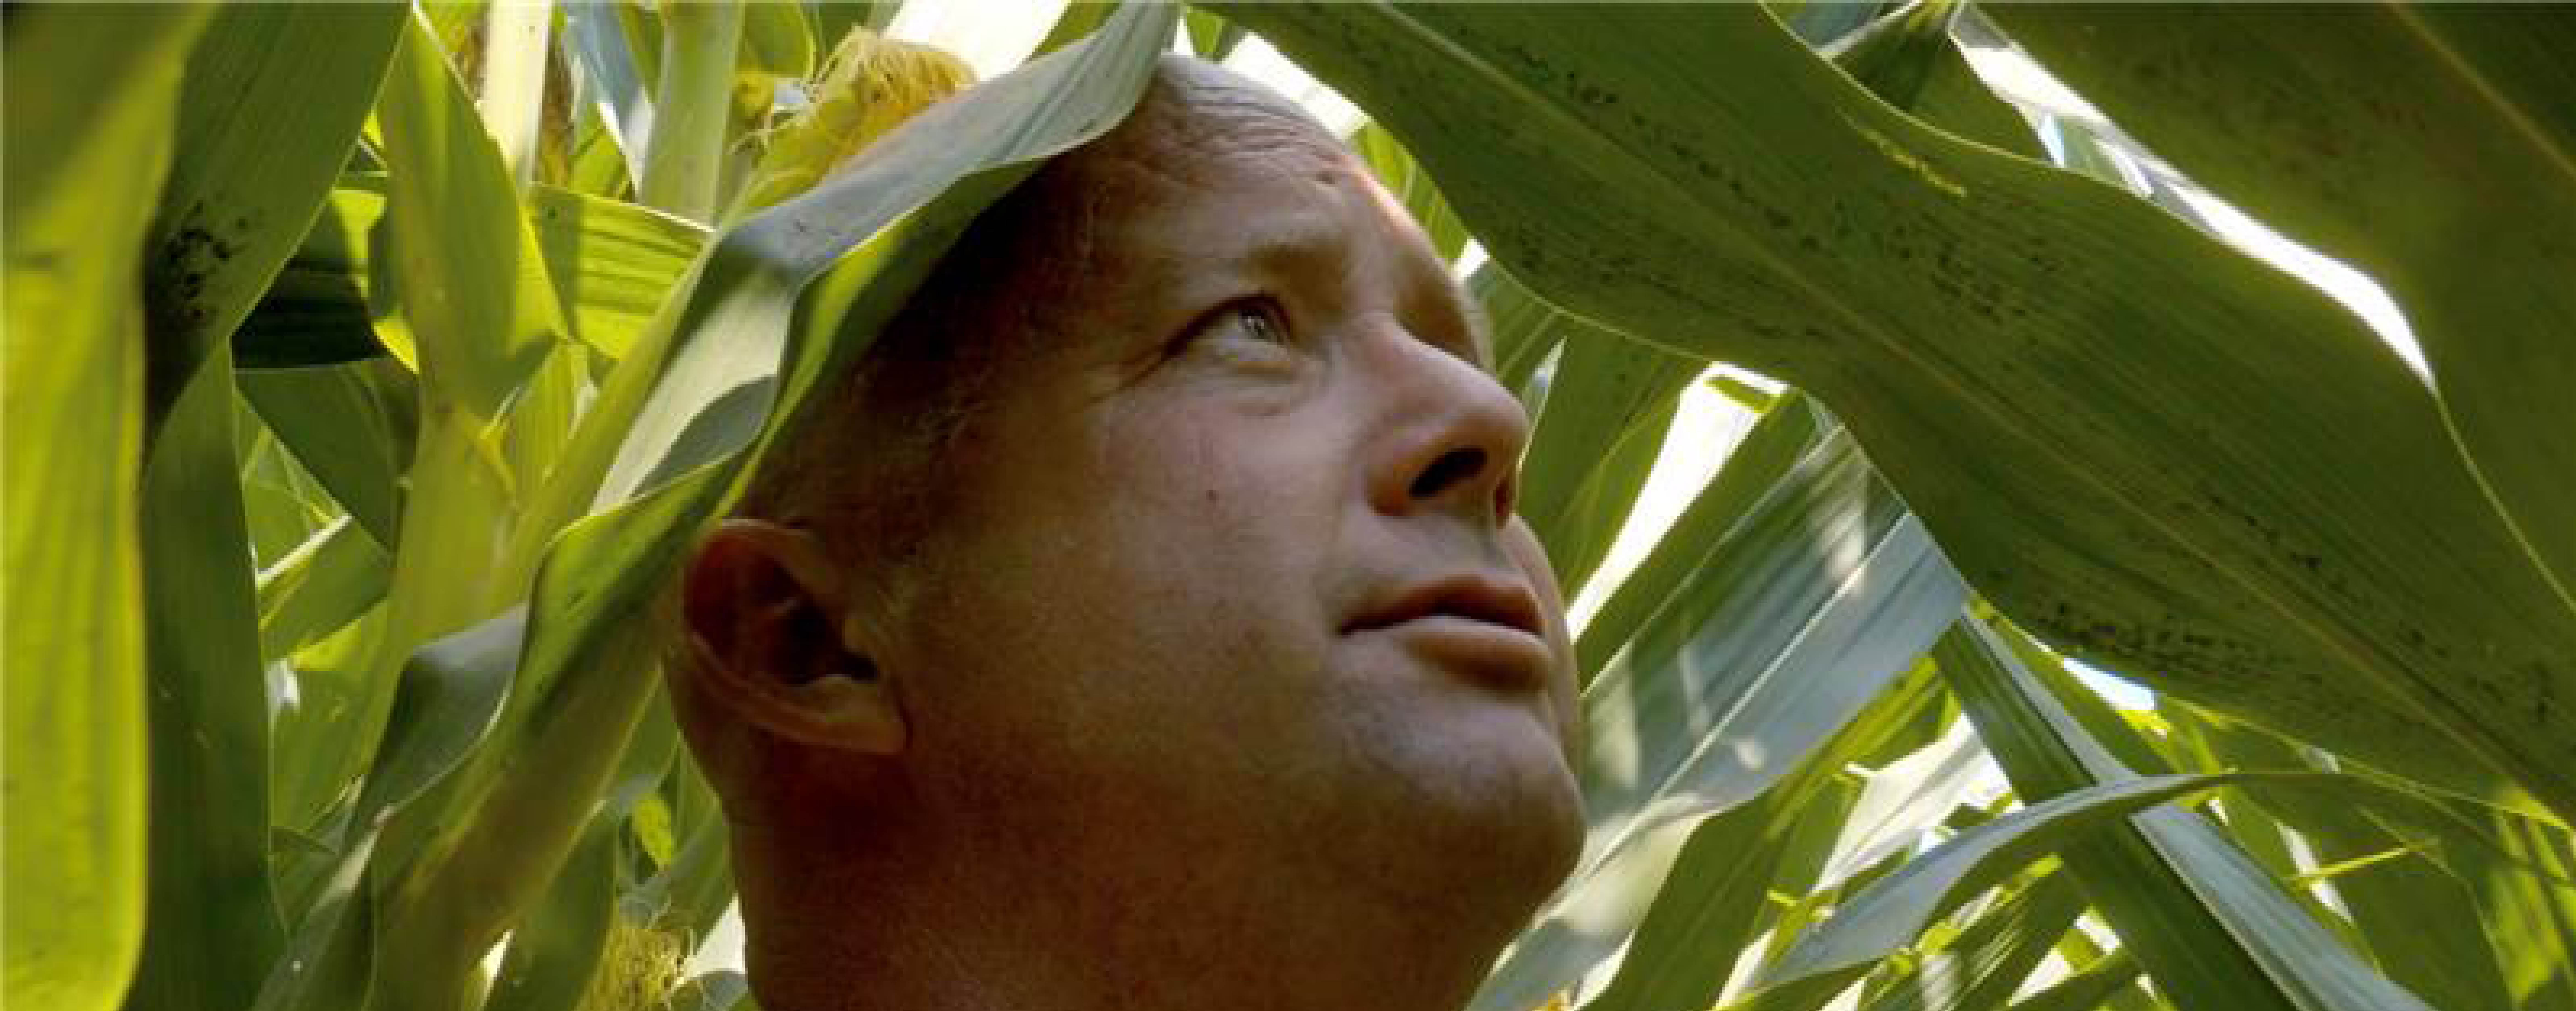 Closeup of man's face in a cornfield